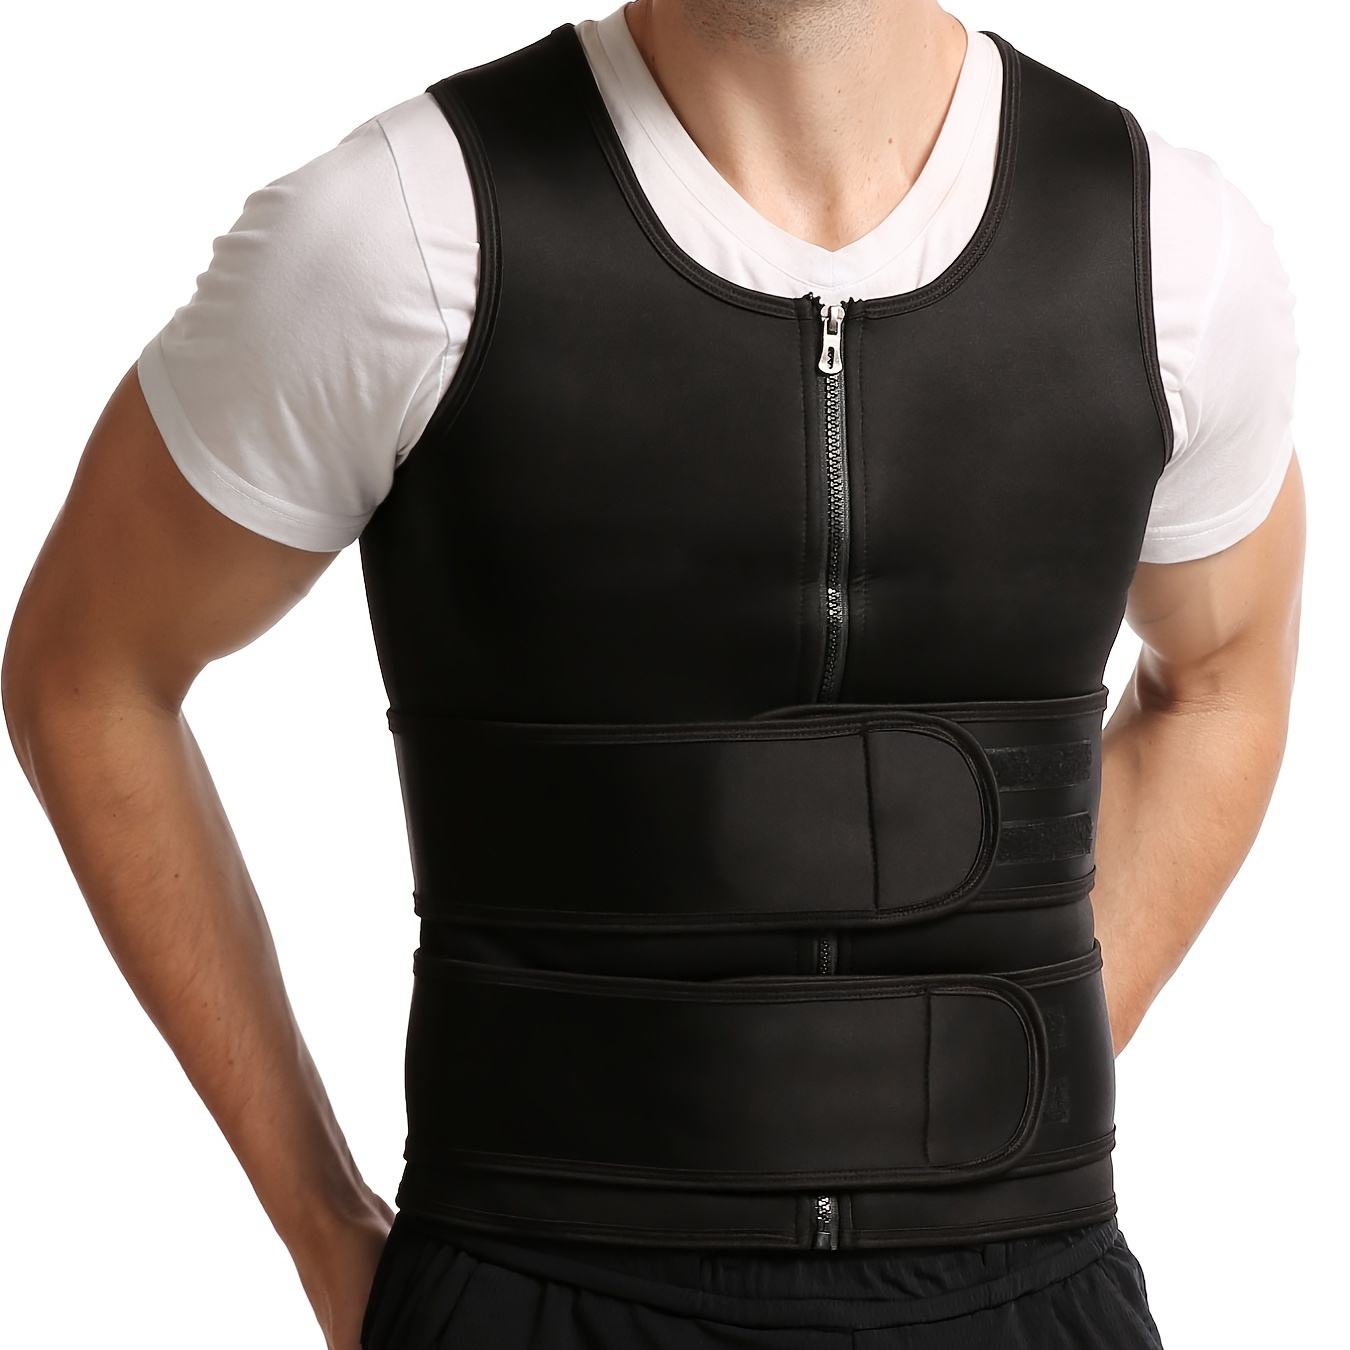 

Gilet à double ceinture pour hommes antitranspirant, renfort en caoutchouc de corset, mouvement de la taille facilité, fermeture à glissière réglable